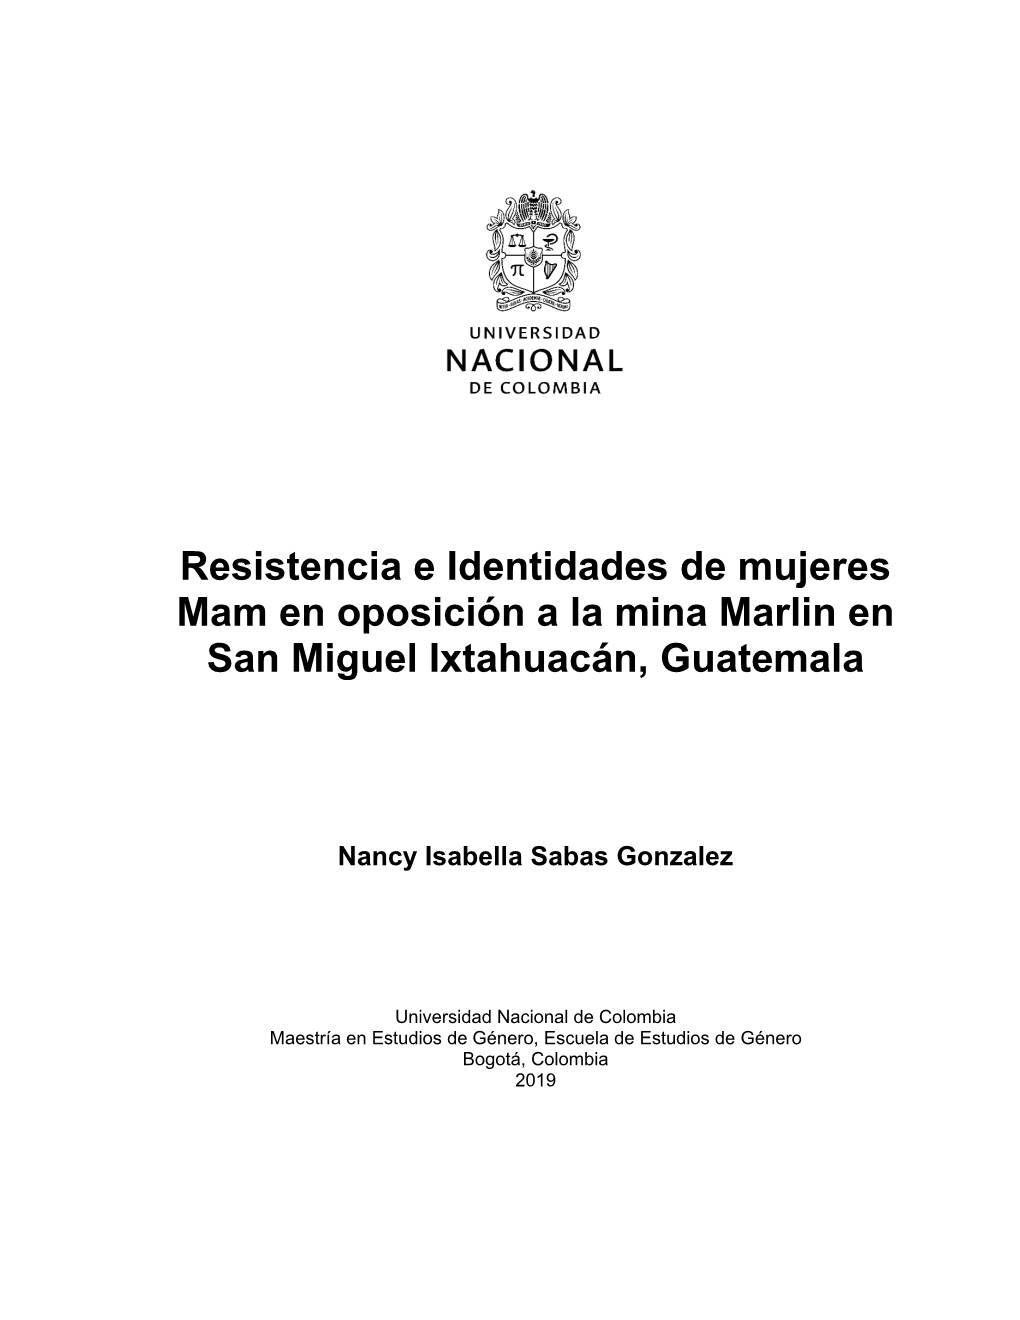 Resistencia E Identidades De Mujeres Mam En Oposición a La Mina Marlin En San Miguel Ixtahuacán, Guatemala